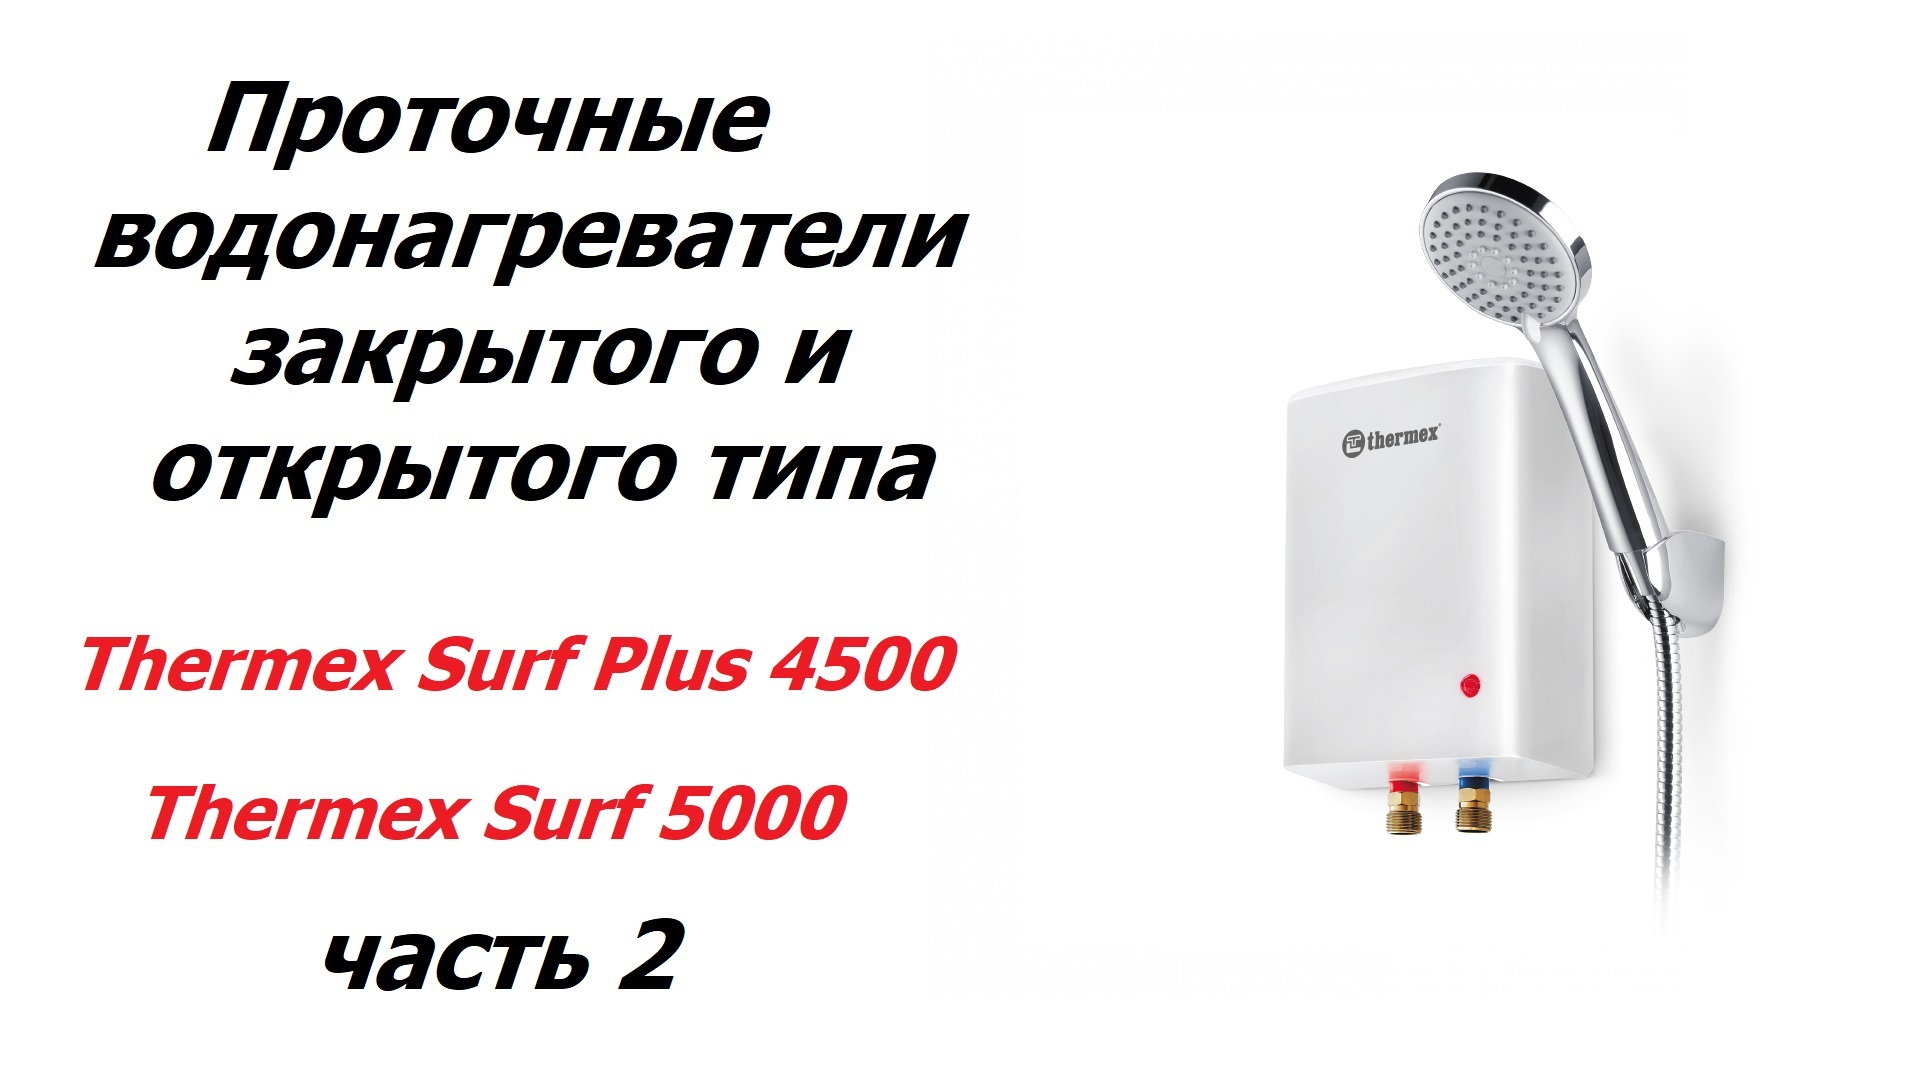 Проточные водонагреватели Thermex Surf Plus 4500, Thermex Surf 5000. Часть 2